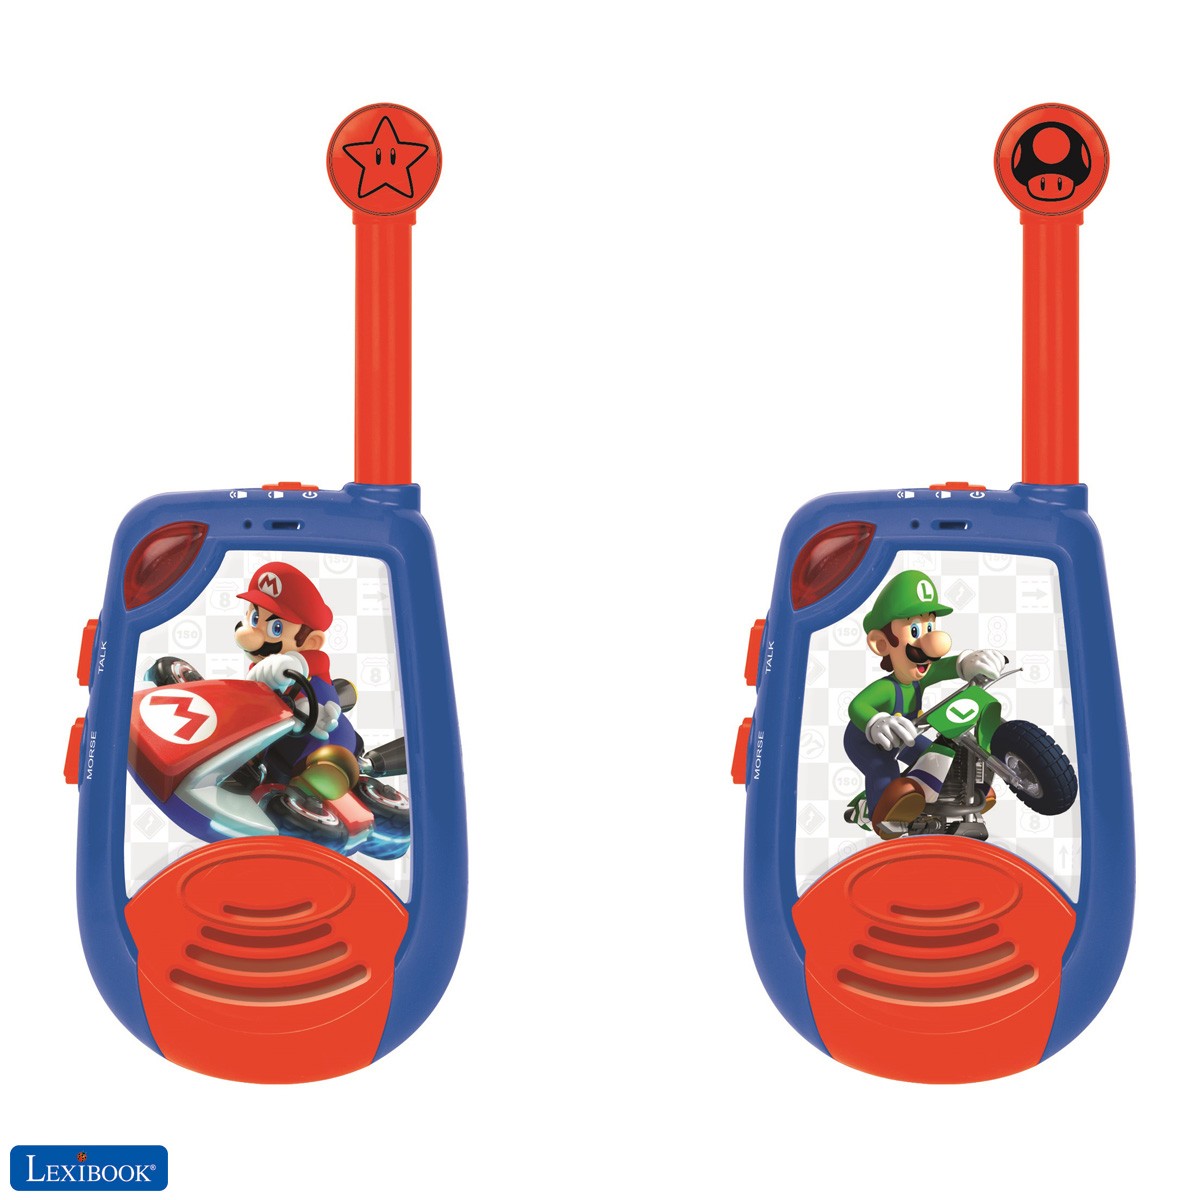 Nintendo Mario Kart - Walkie-Talkies digitales para Niños